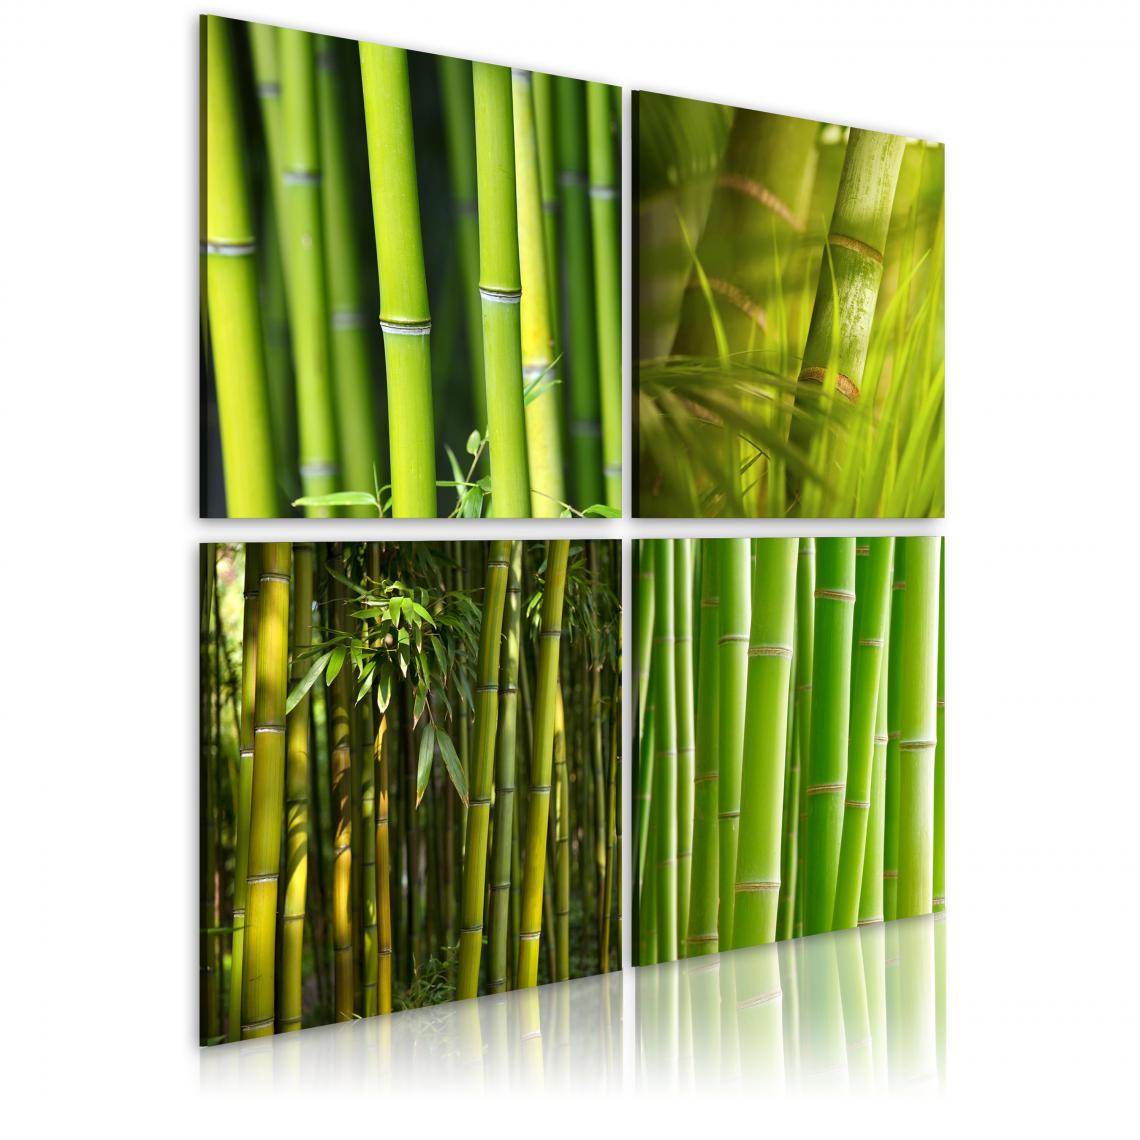 Decoshop26 - Tableau sur toile en 4 panneaux décoration murale image imprimée cadre en bois à suspendre Bambous 80x80 cm 11_0008901 - Tableaux, peintures